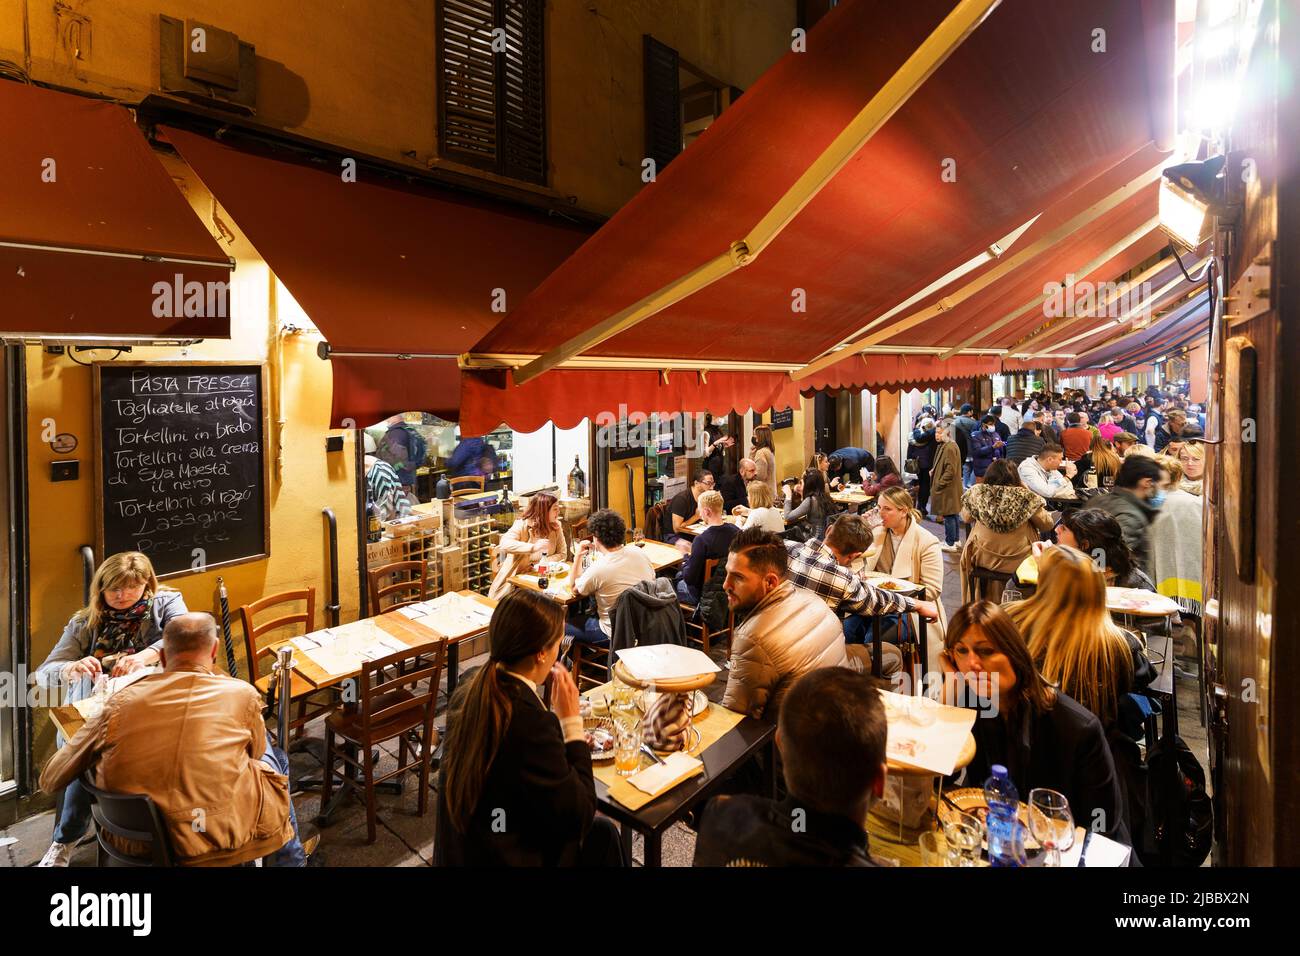 Bolonia, Italia - 29 2021 de octubre: La gente disfruta de la comida y las bebidas en la famosa calle Pecherie Vecchie llena de bares y restaurantes auténticos en Bolo Foto de stock